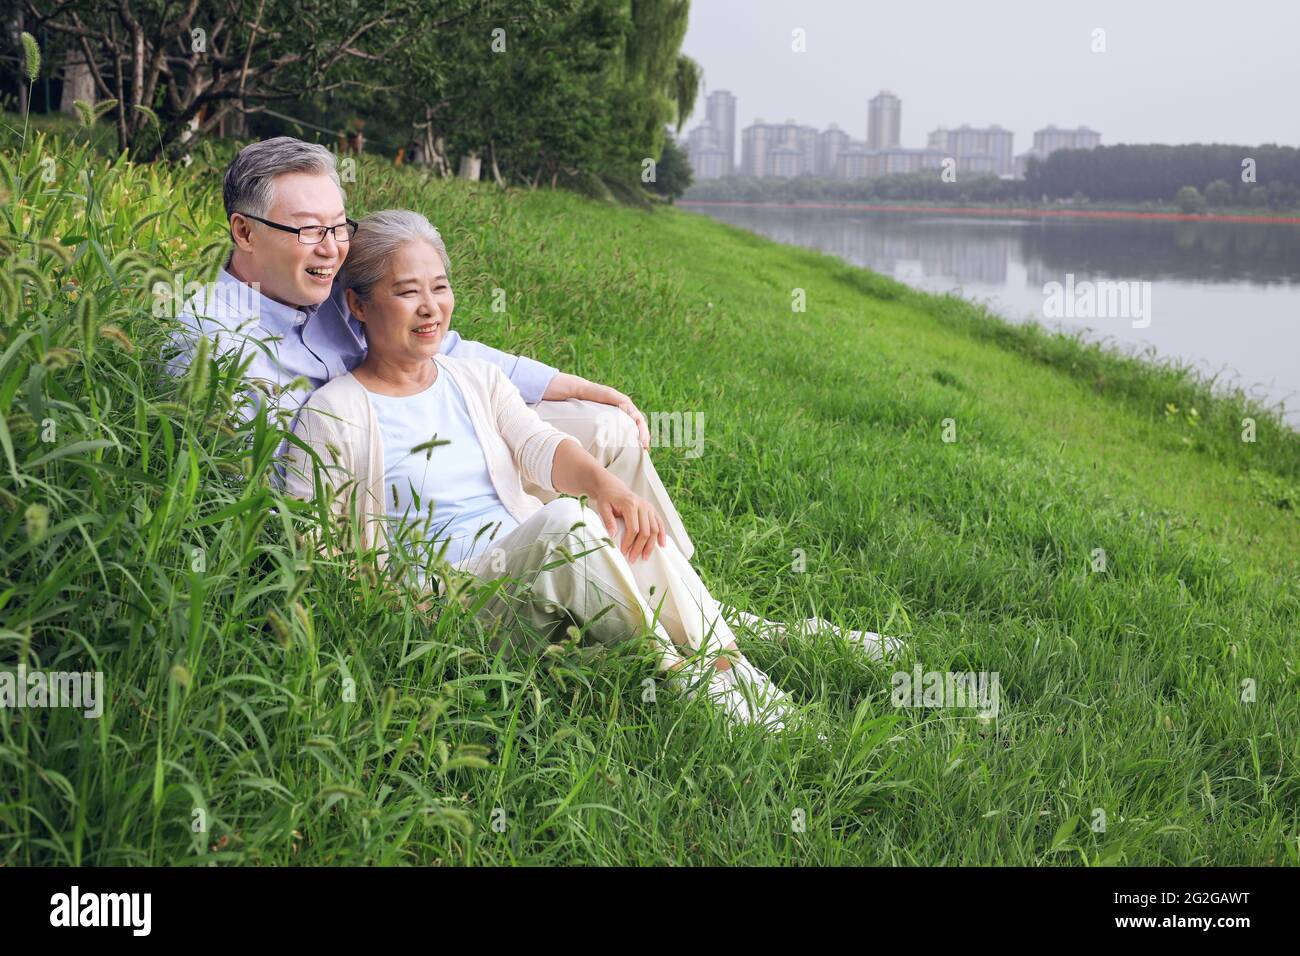 Un vieux couple heureux regardant le paysage au bord du lac photo de haute qualité Banque D'Images